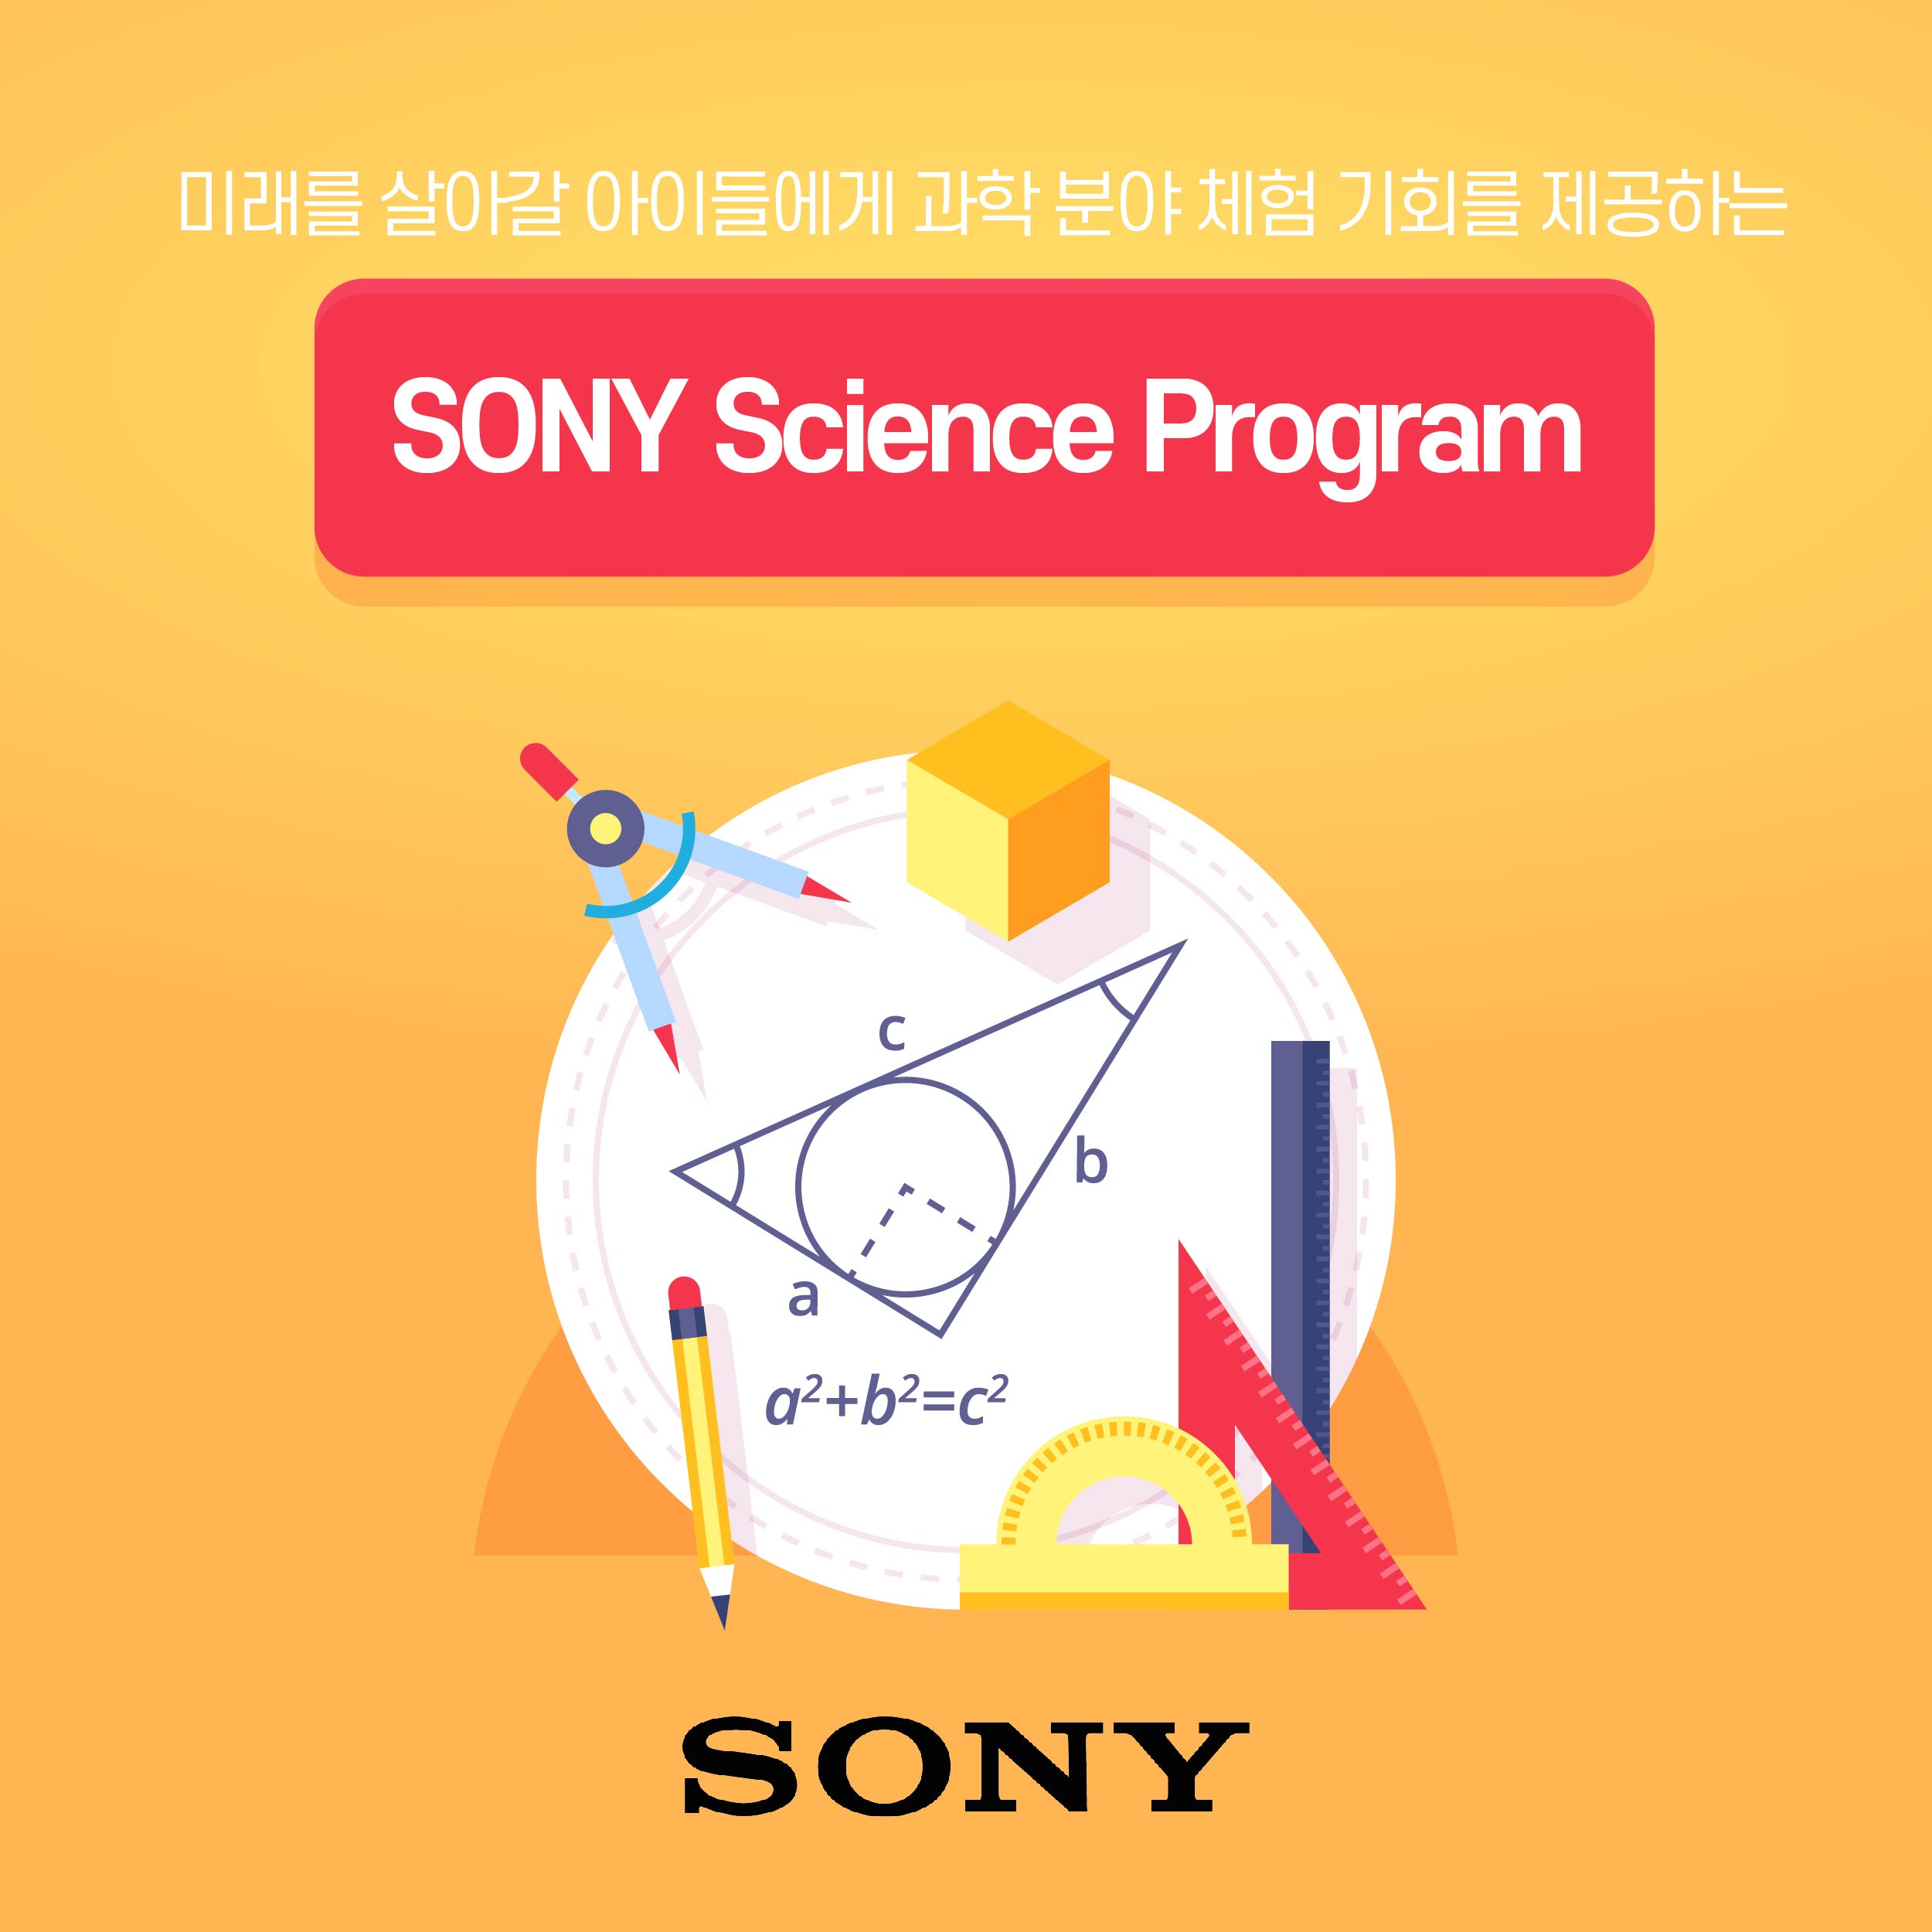 미래를 살아갈 아이들에게 과학 분야 체험 기회를 제공하는 sony science program